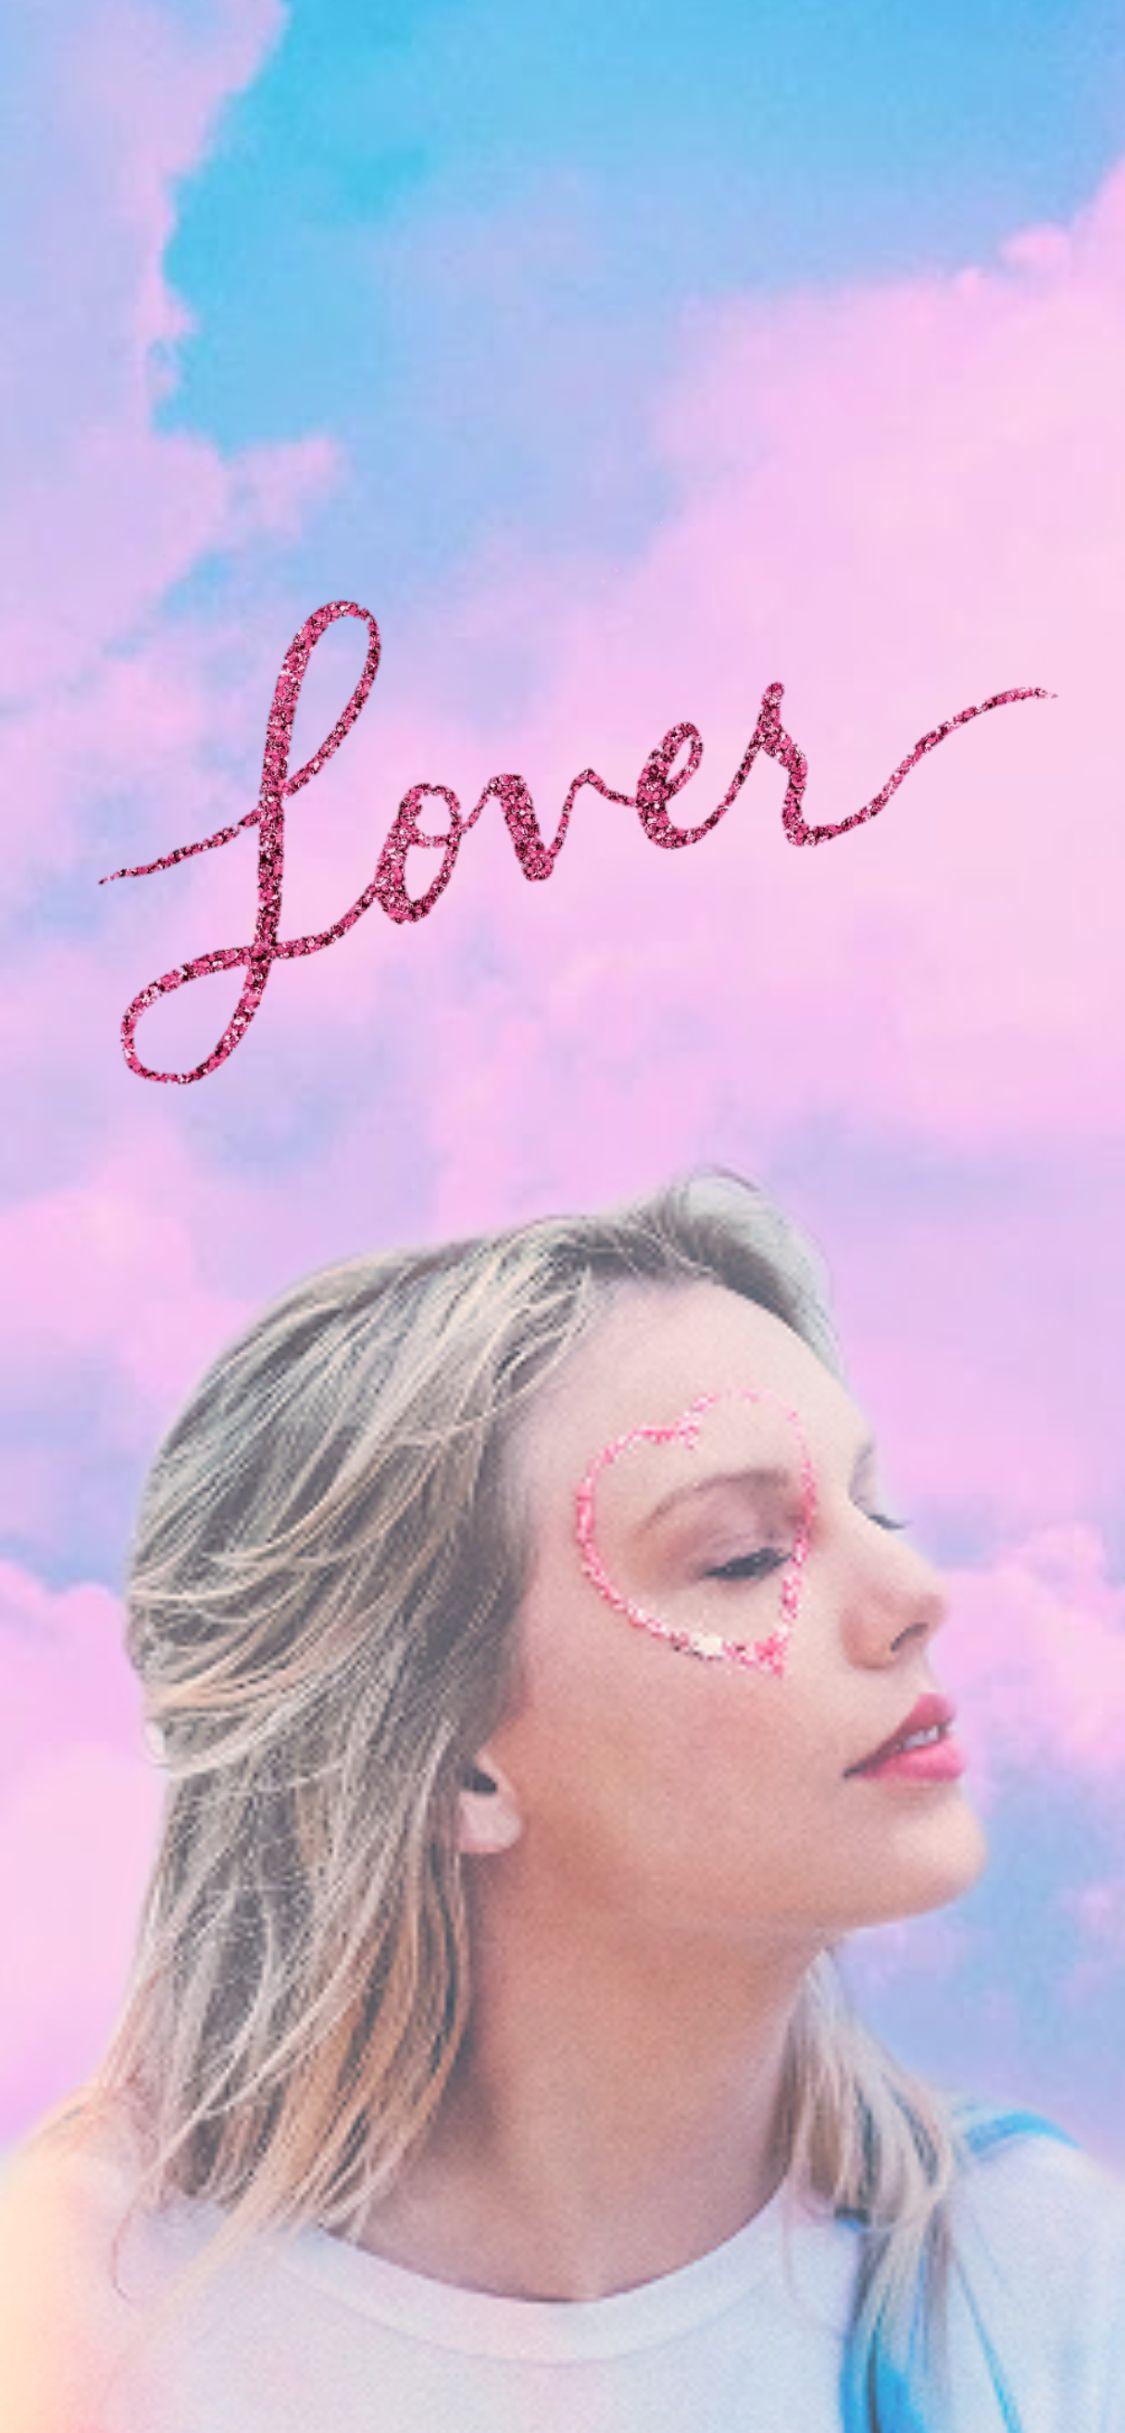 Lover Taylor Swift Wallpaper Hd Desktop